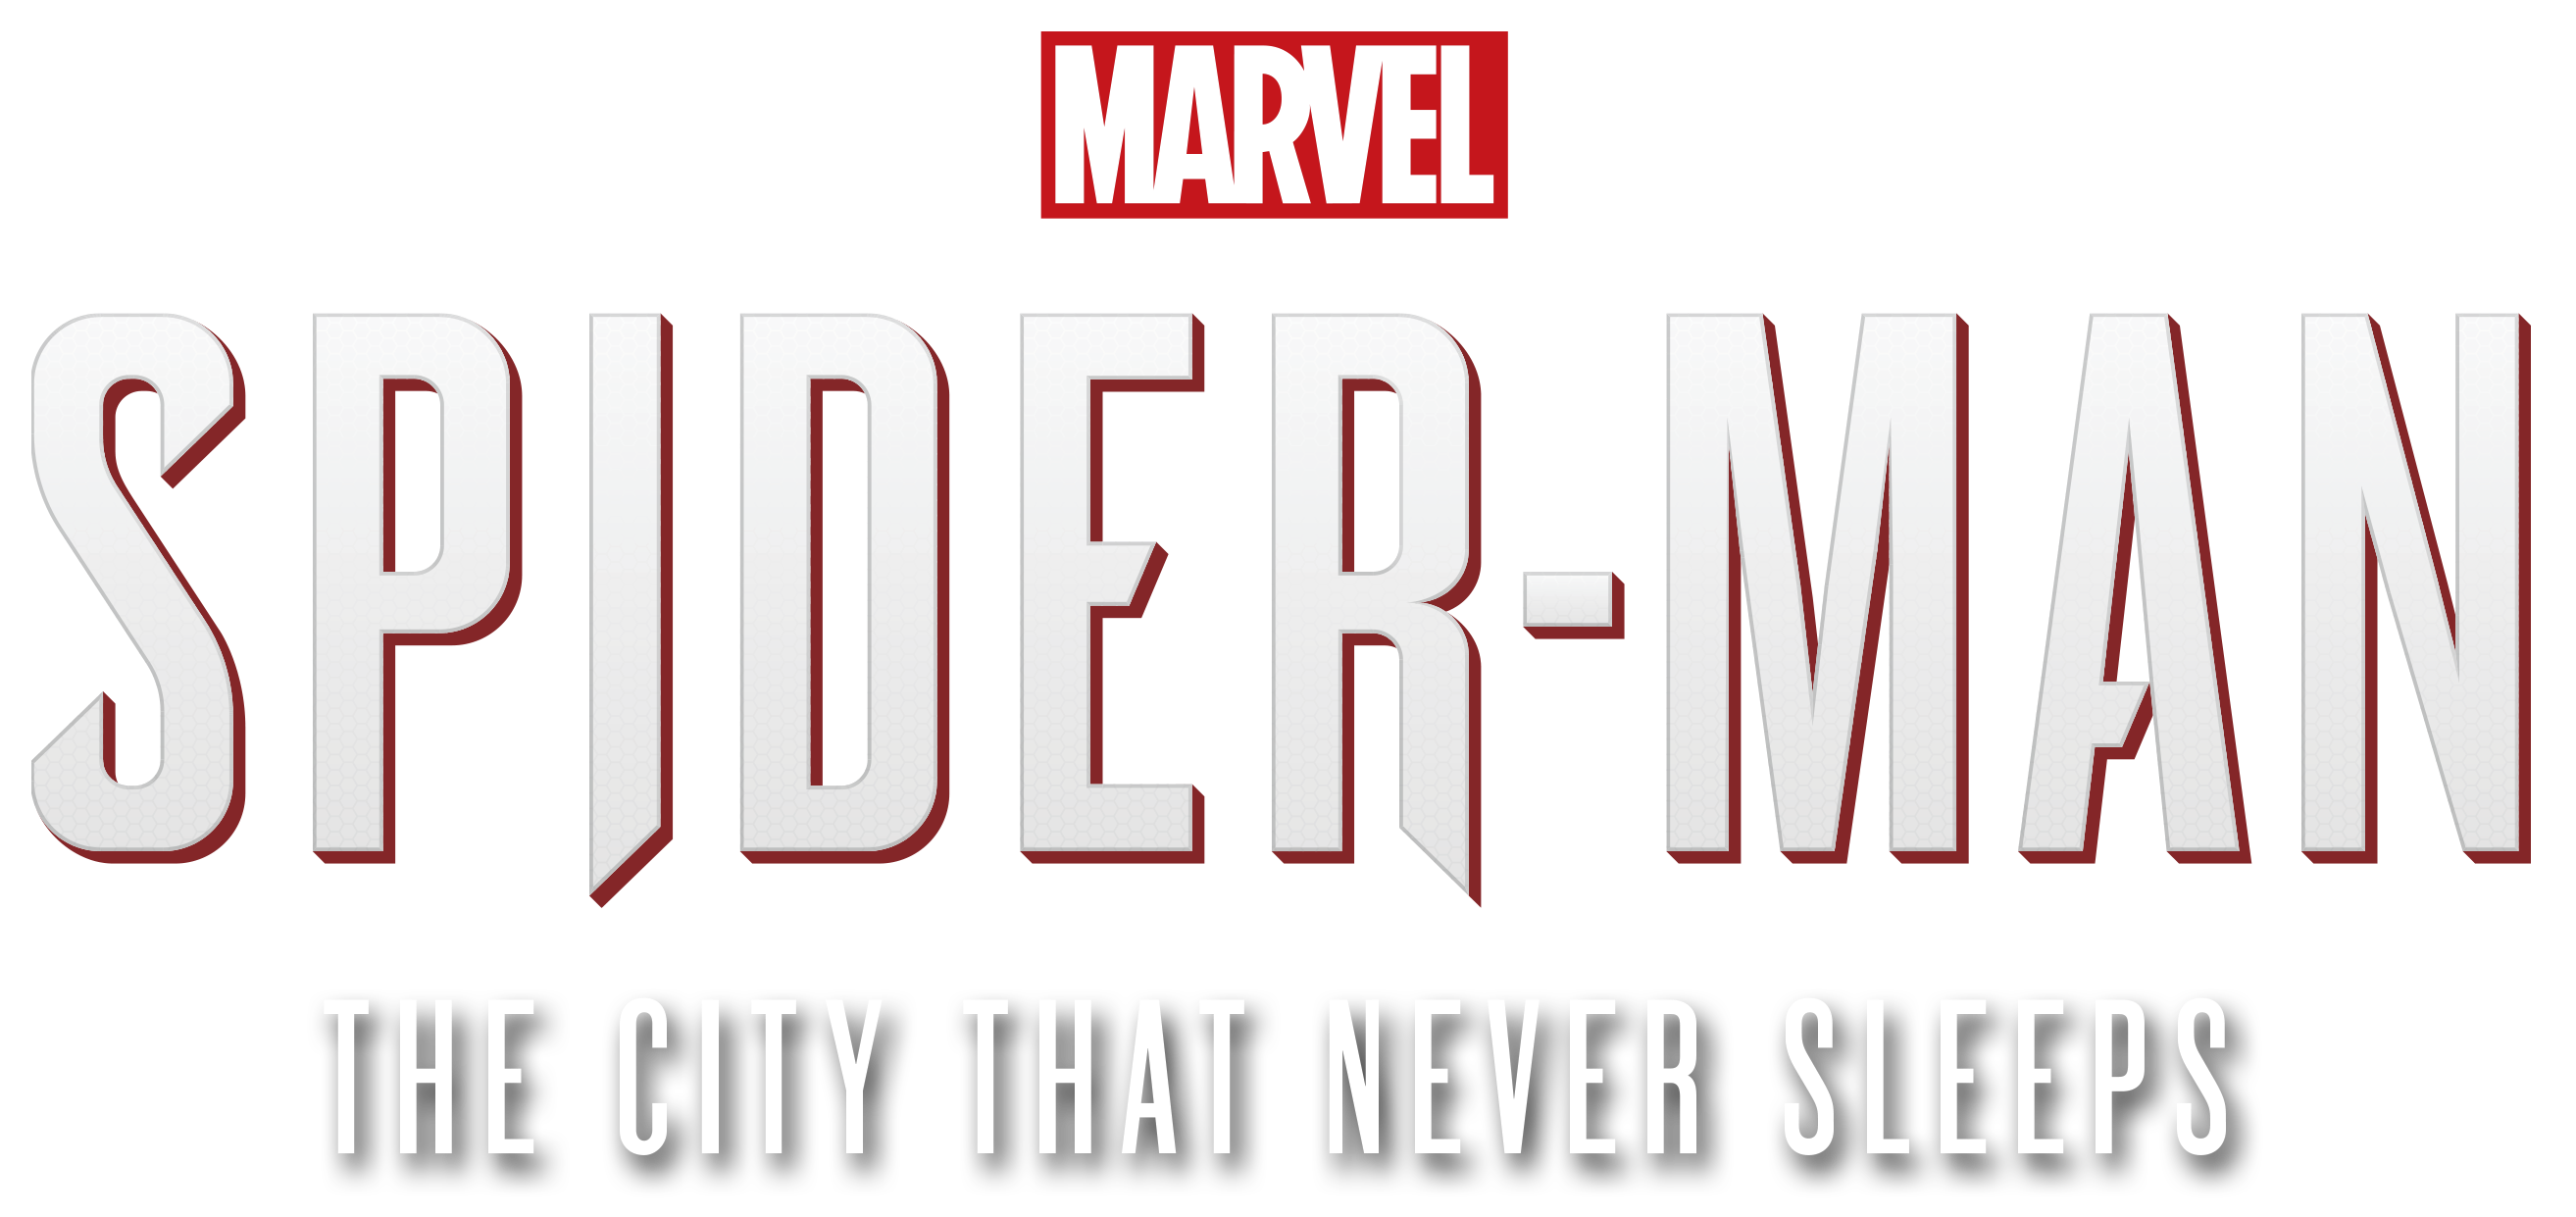 Spider-Man: La città che non dorme mai